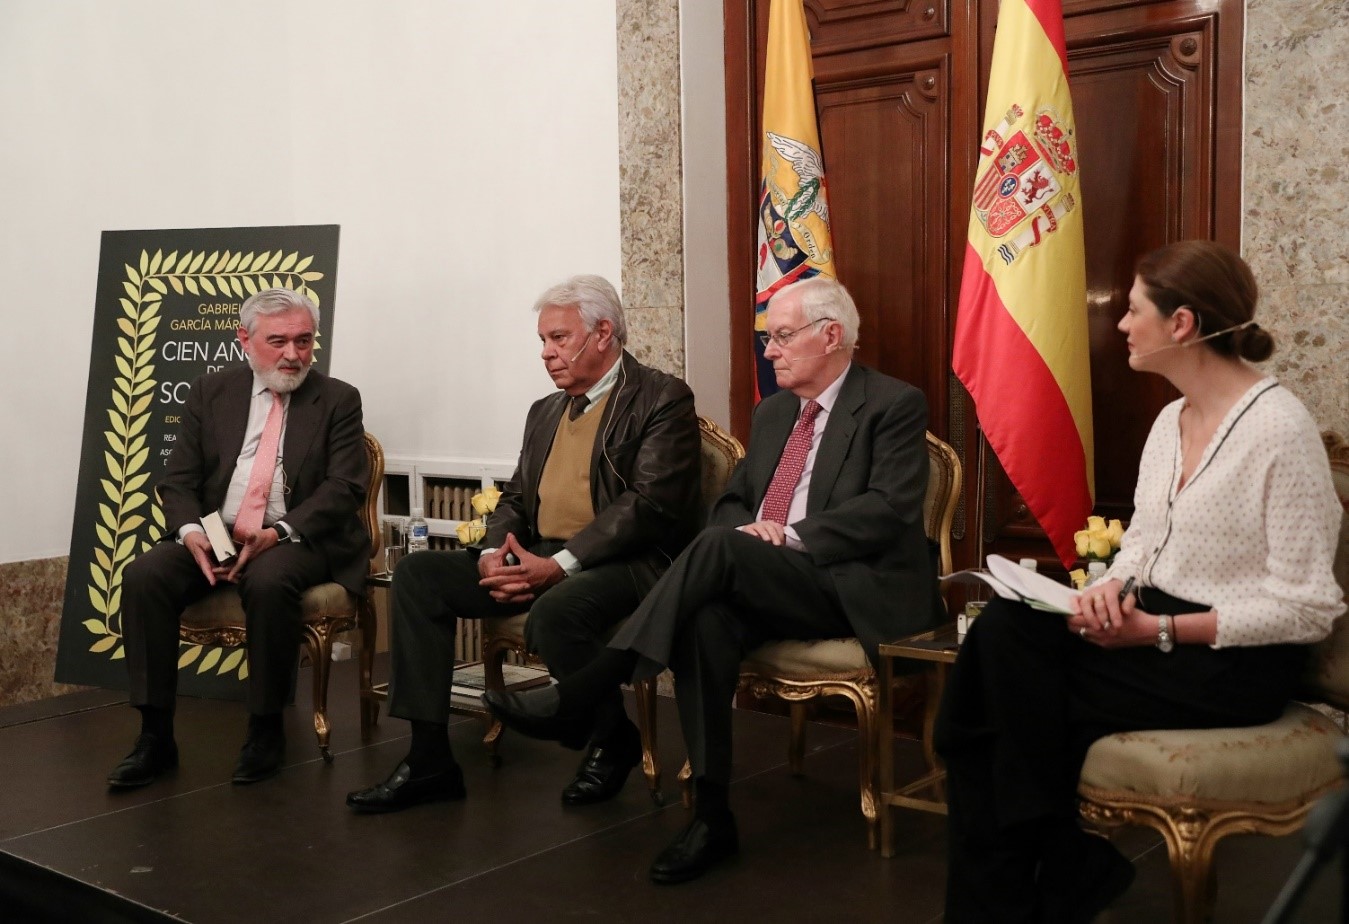 Inician actividades de Acción Cultural de nuestras embajadas en 2018 con conversatorio sobre la edición conmemorativa de “Cien años de soledad” en España